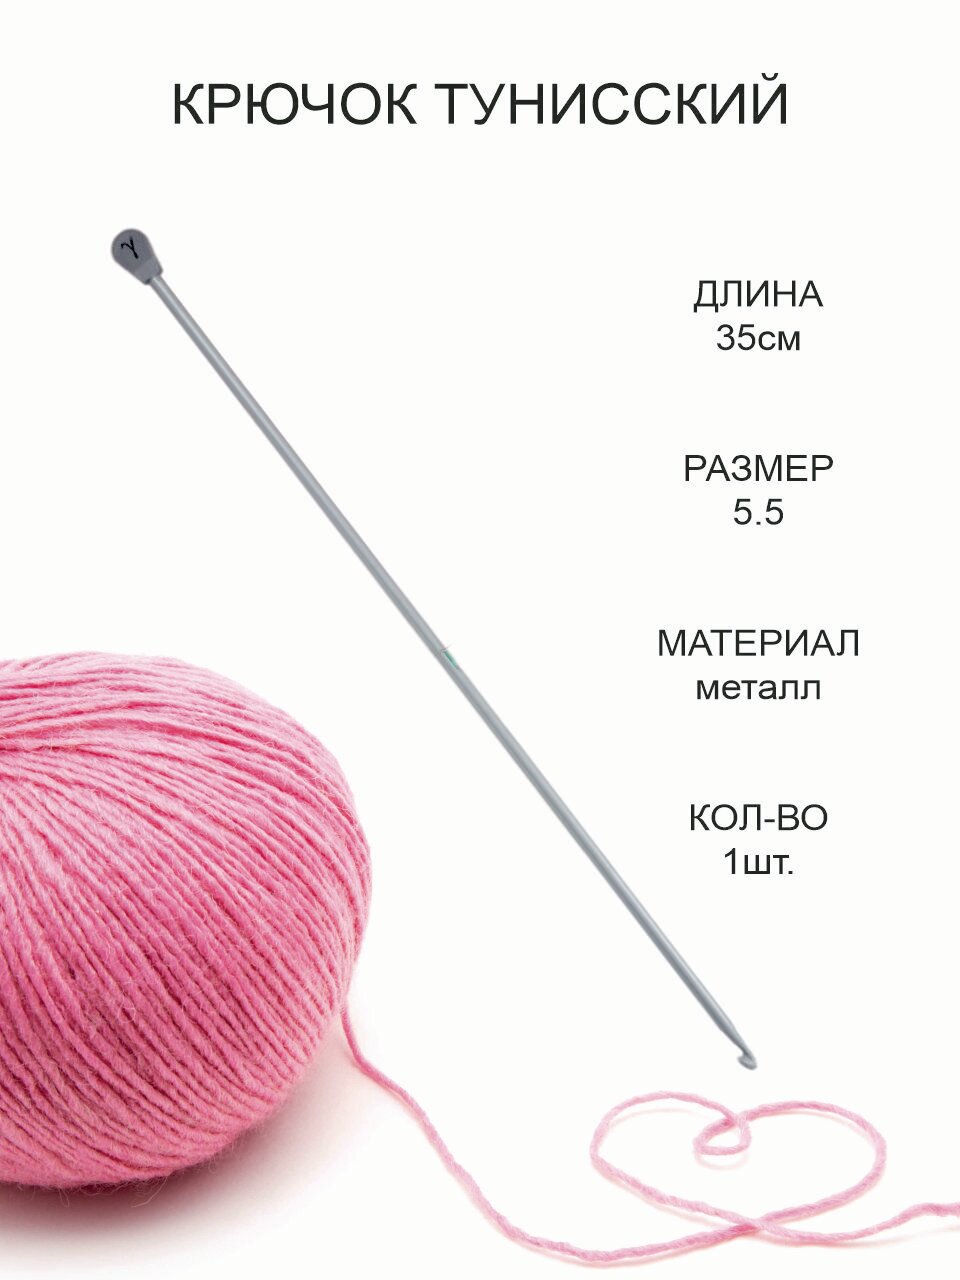 Крючок для тунисского вязания, металл, диаметр 5.5 мм, длина 35 см / Крючок для вязания Афганский с тефлоновым покрытием